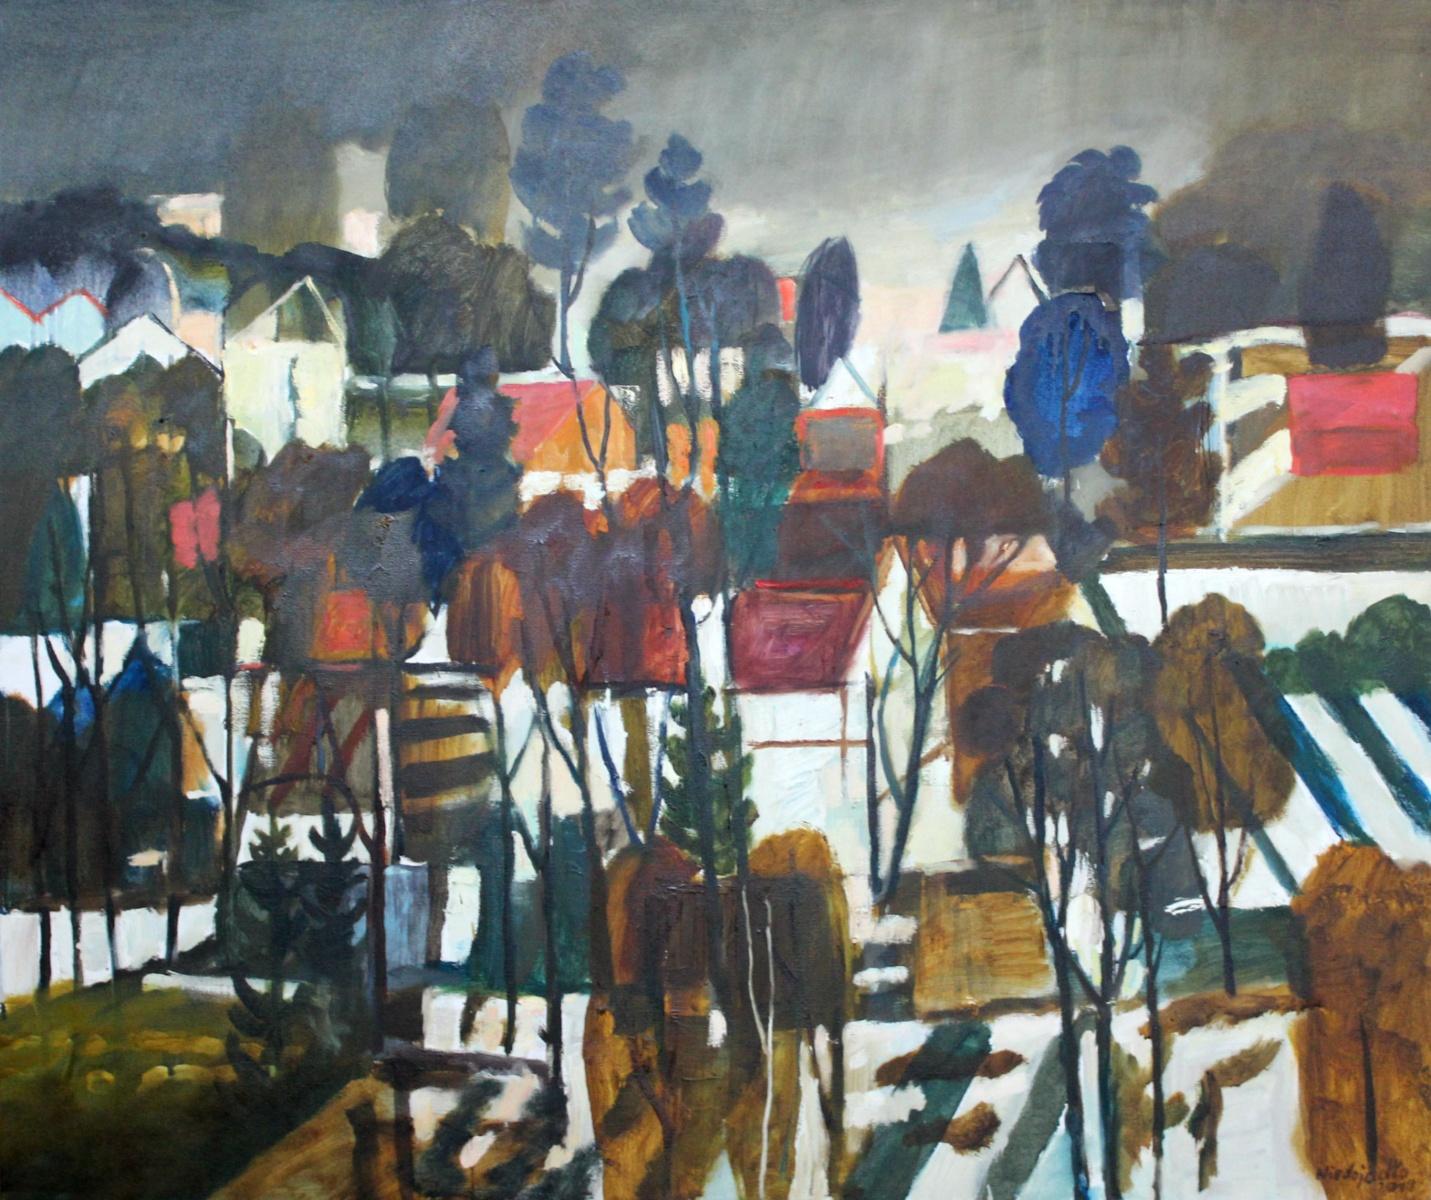 Marek Niedojadło Landscape Painting – Herbst Atmosphäre – 21. Jahrhundert, zeitgenössisches Öl-Landschaftsgemälde, farbenfrohe